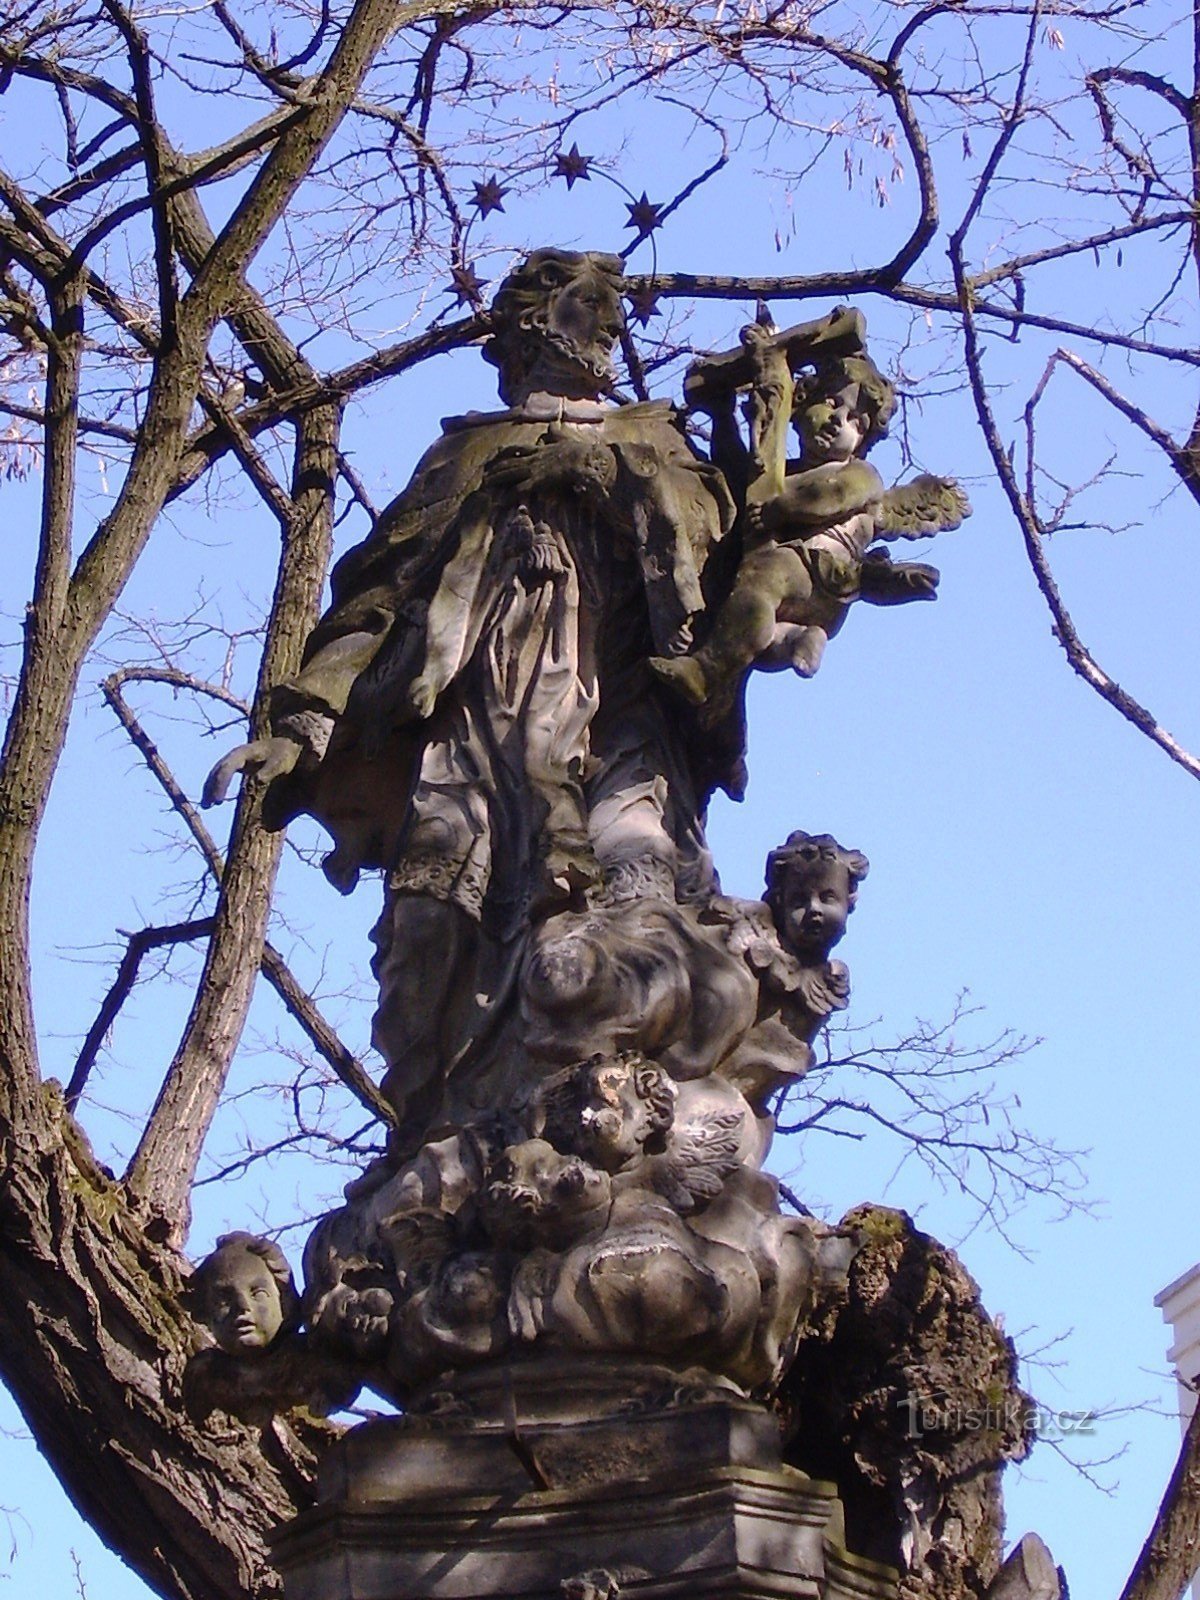 A seguire lo scultore Jiří Antonín Heinz a Olomouc